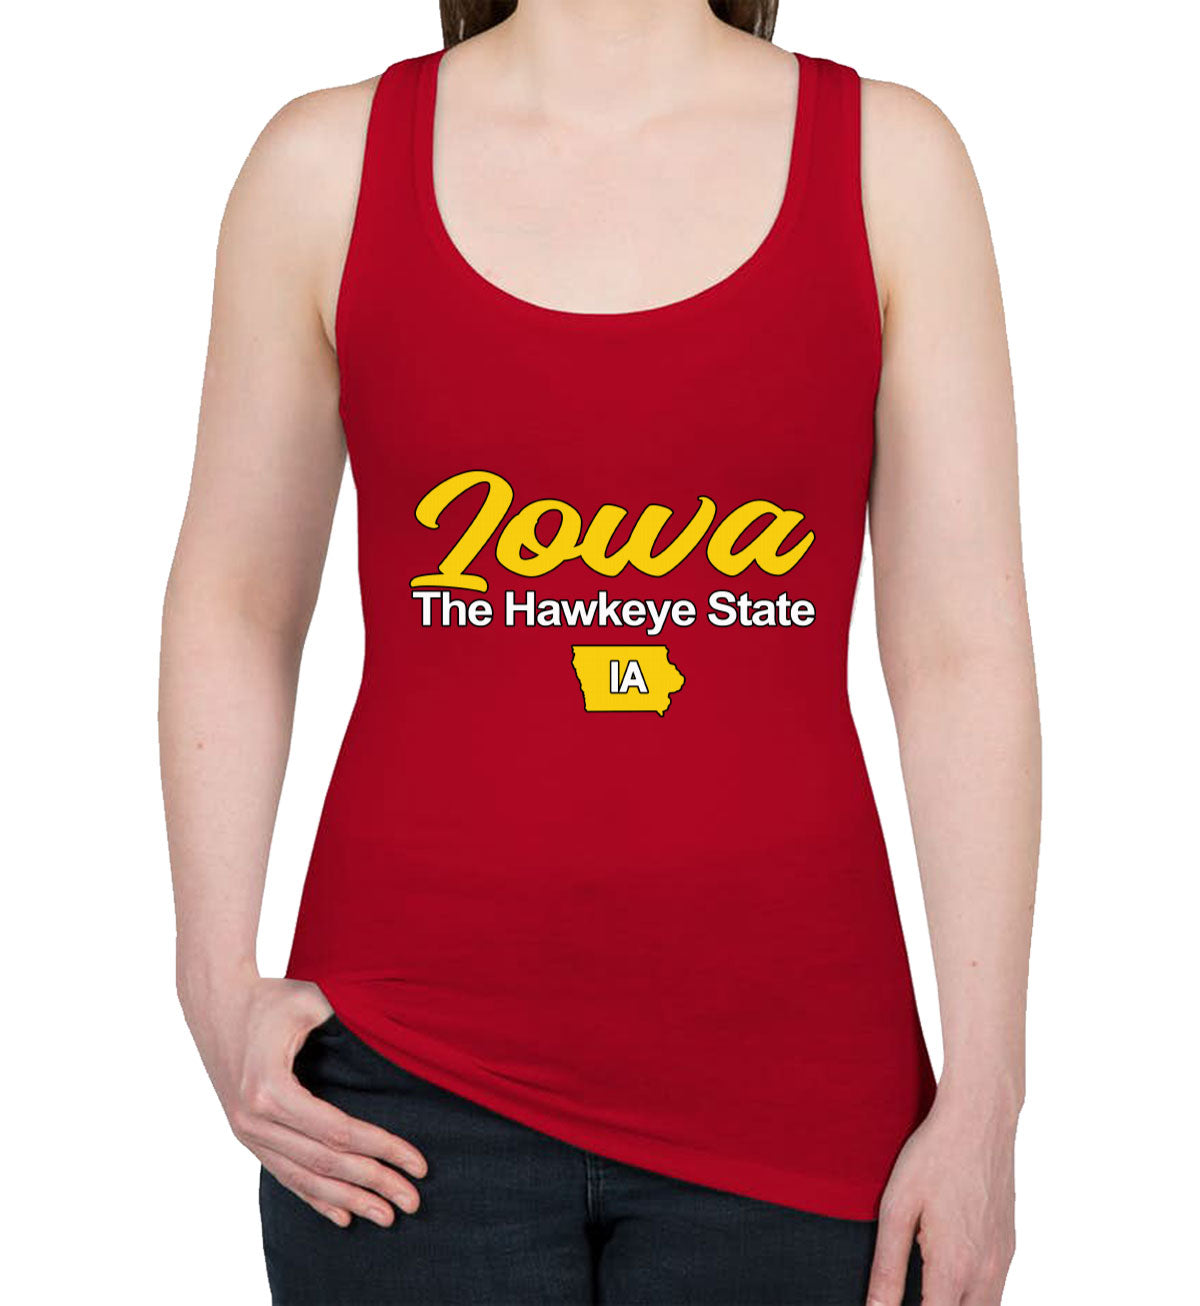 Iowa The Hawkeye State Women's Racerback Tank Top